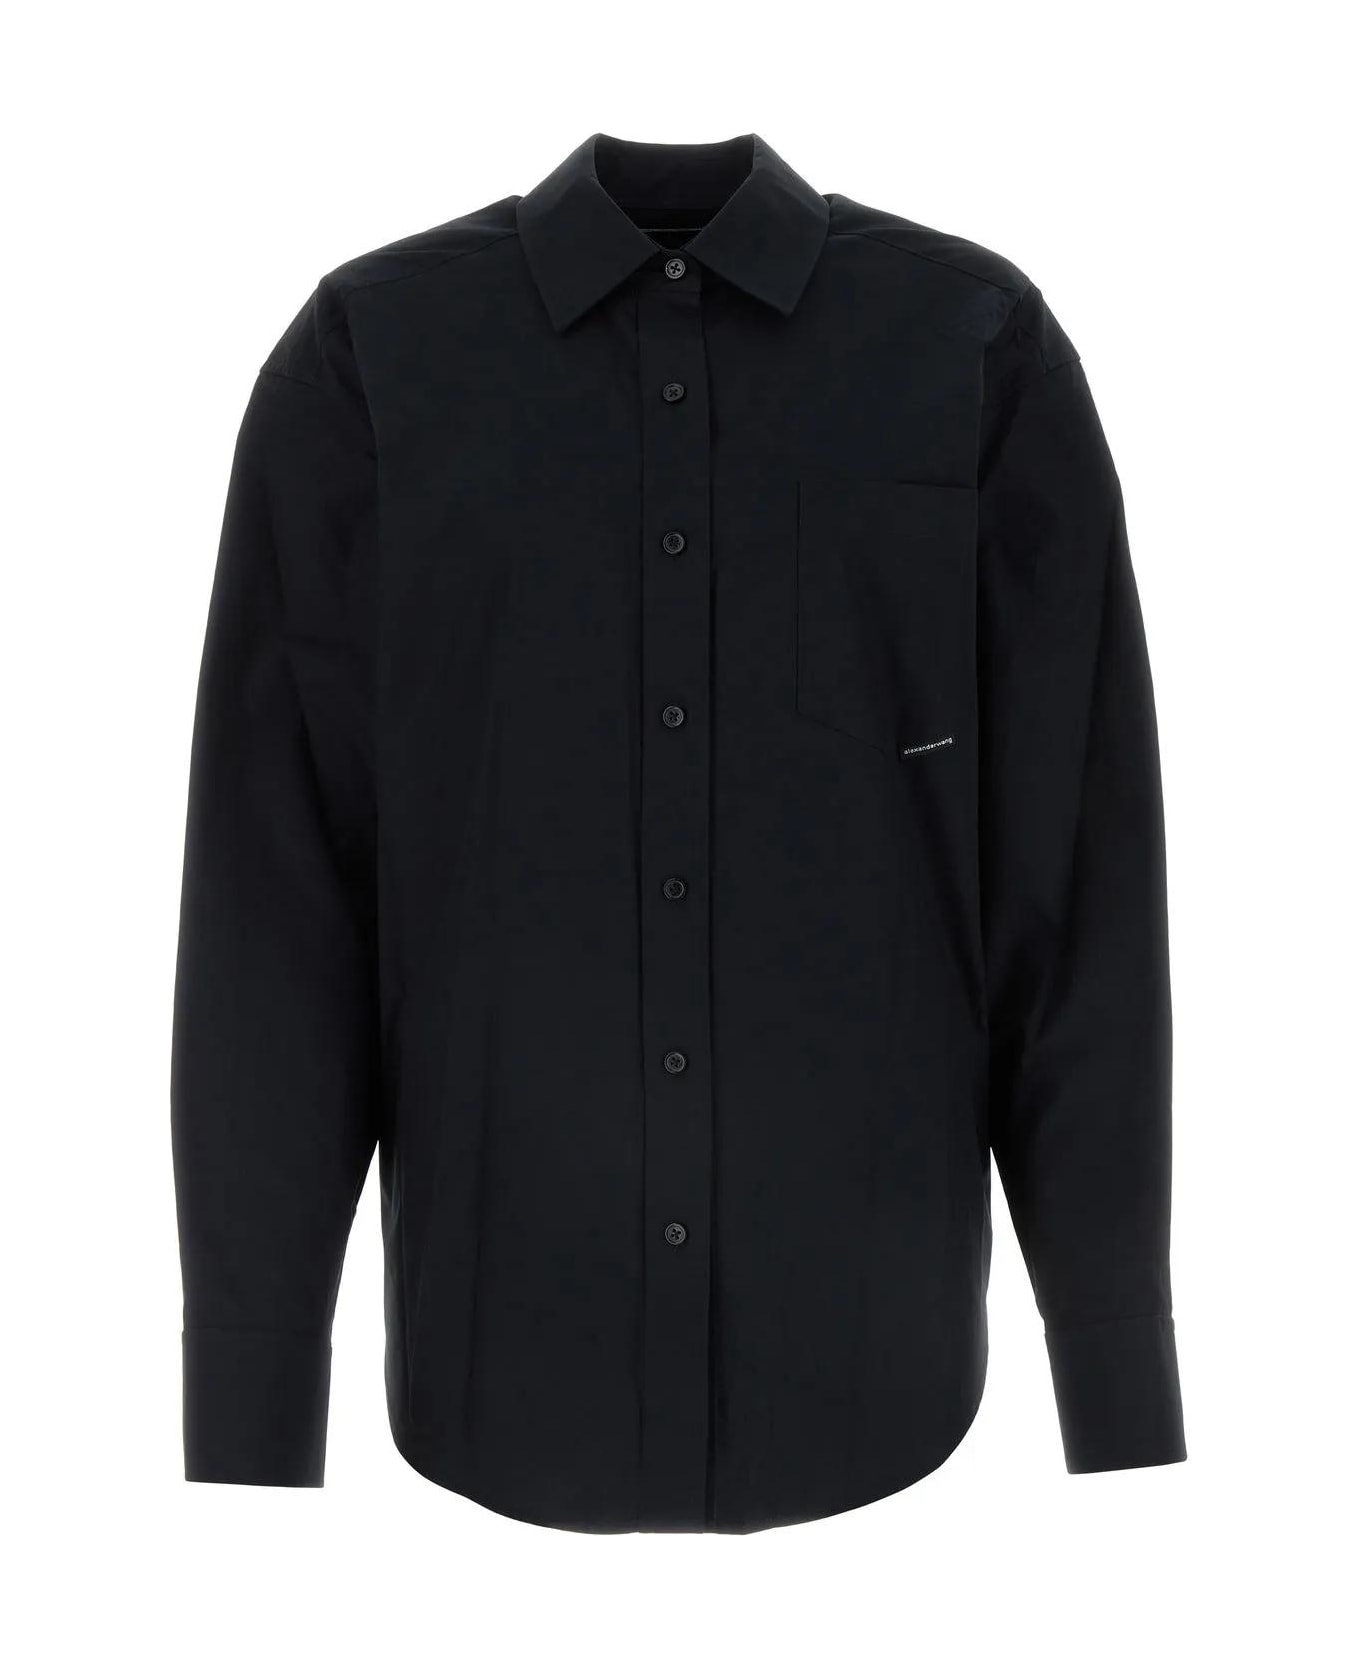 Alexander Wang Black Poplin Shirt - Black